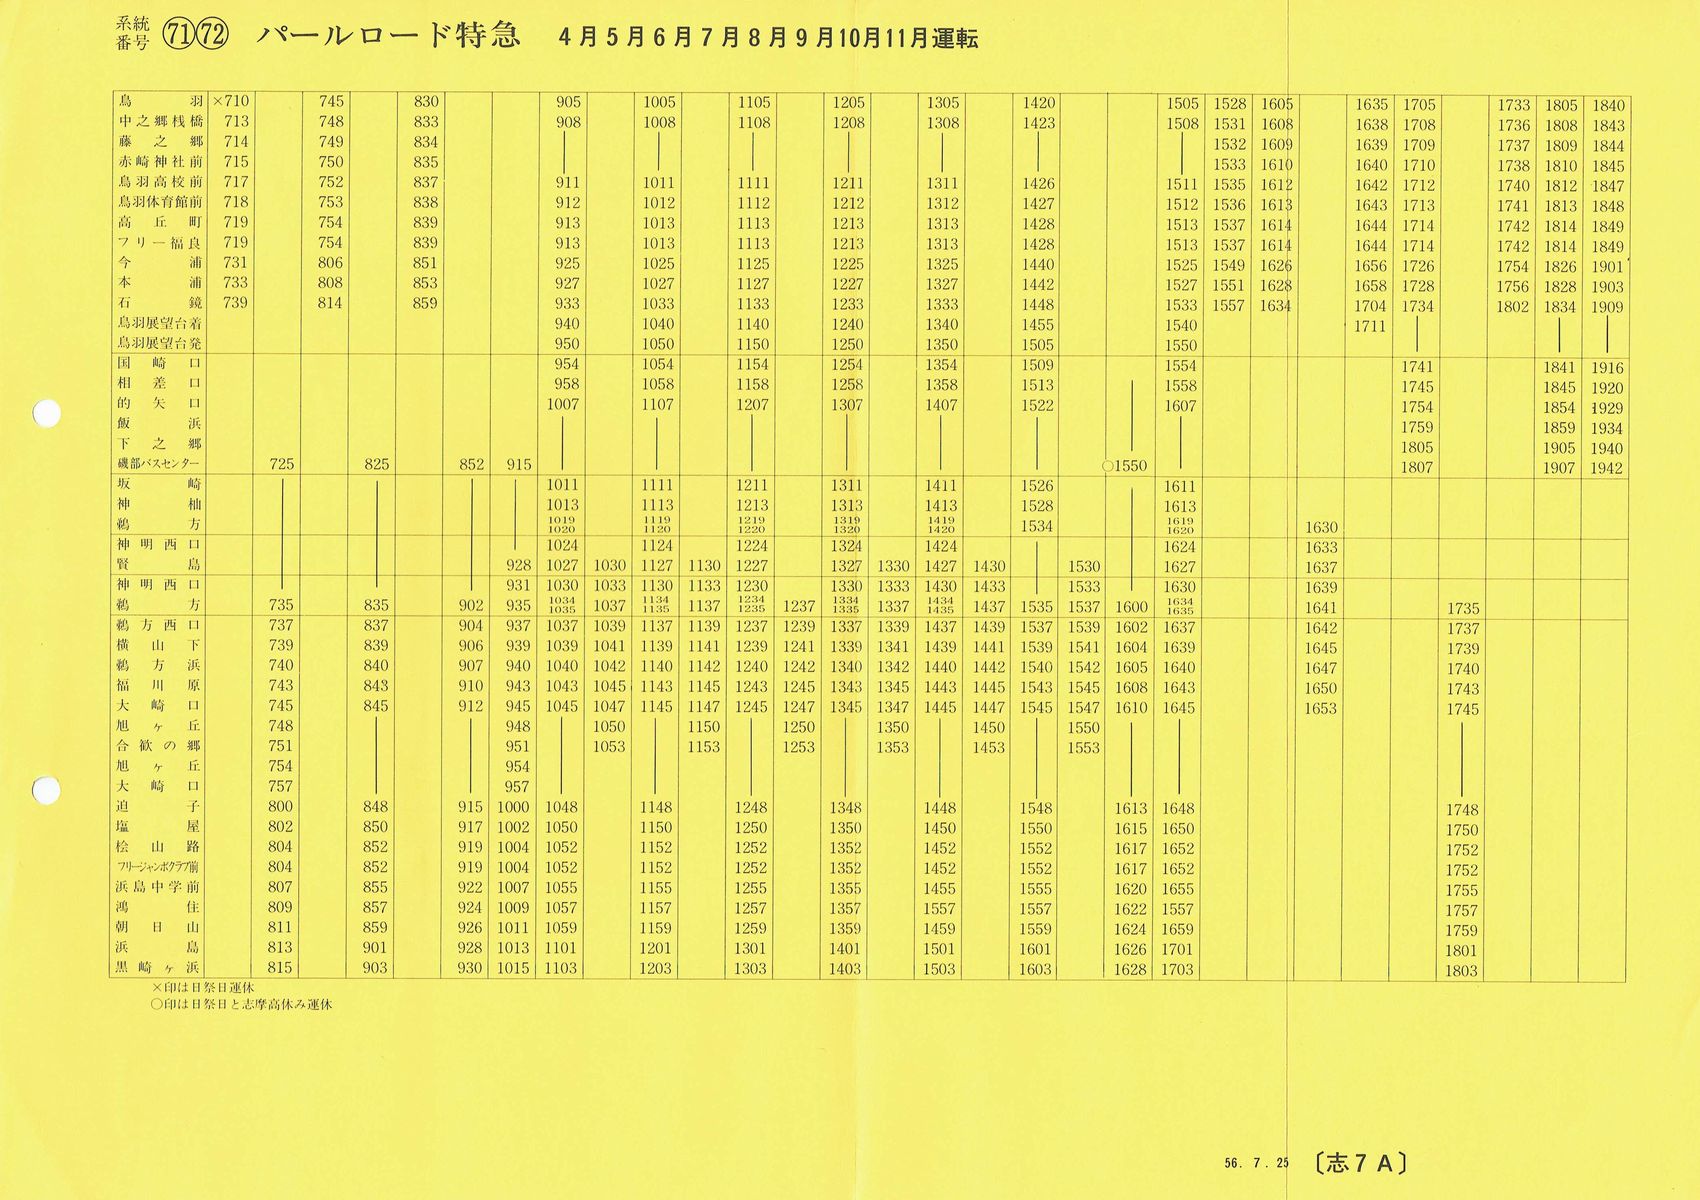 1981-07-25現在_三重交通_[71][72]パールロード特急(４月〜11月)時刻表表面